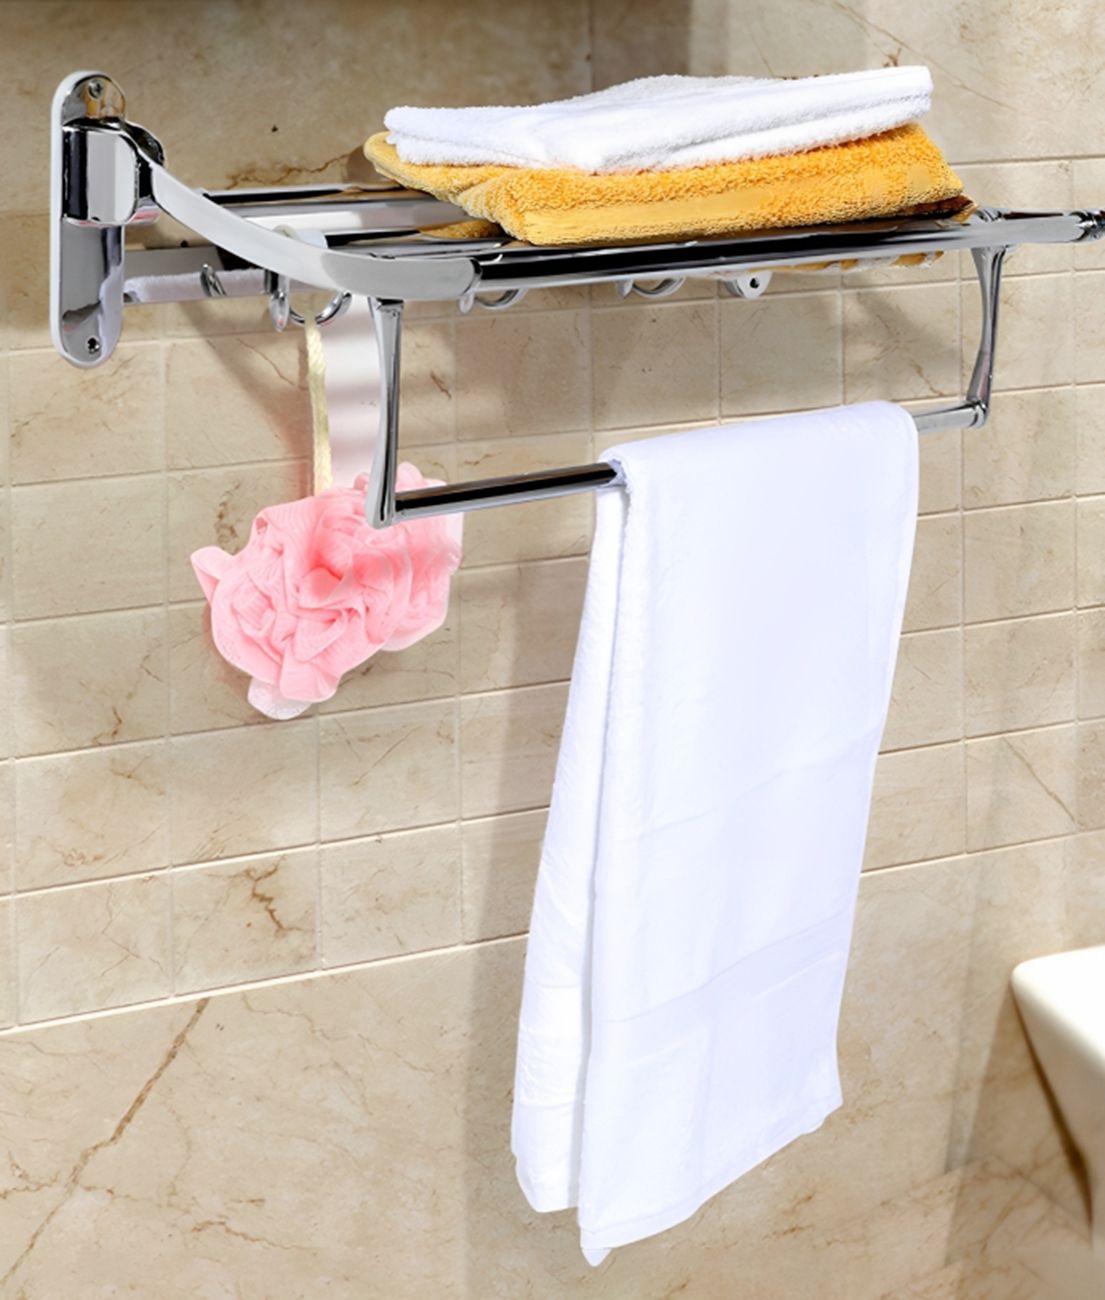     			HOMETALES - Stainless Steel Premium Bathroom Folding Towel Rack, 48cm (Length)